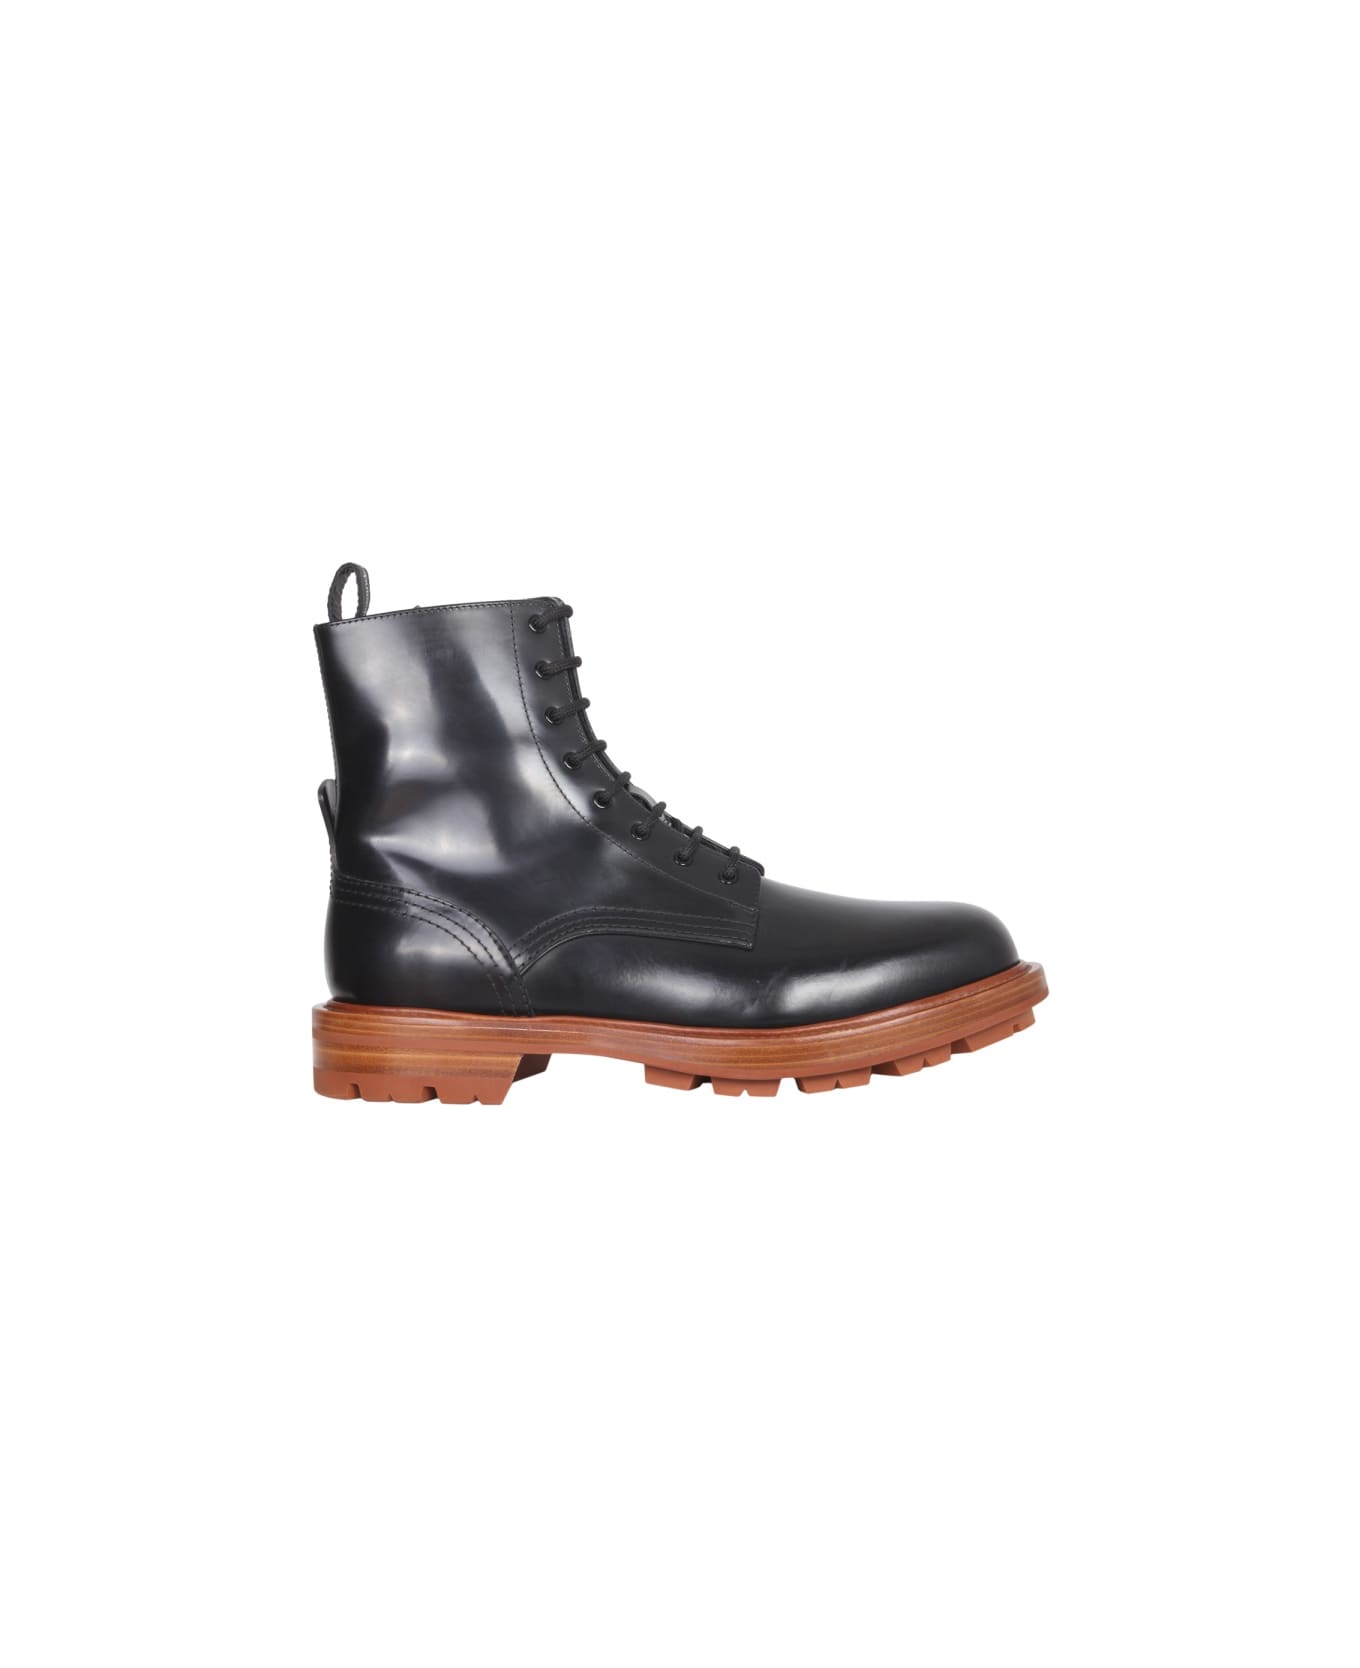 Alexander McQueen Worker Boots - BLACK ブーツ